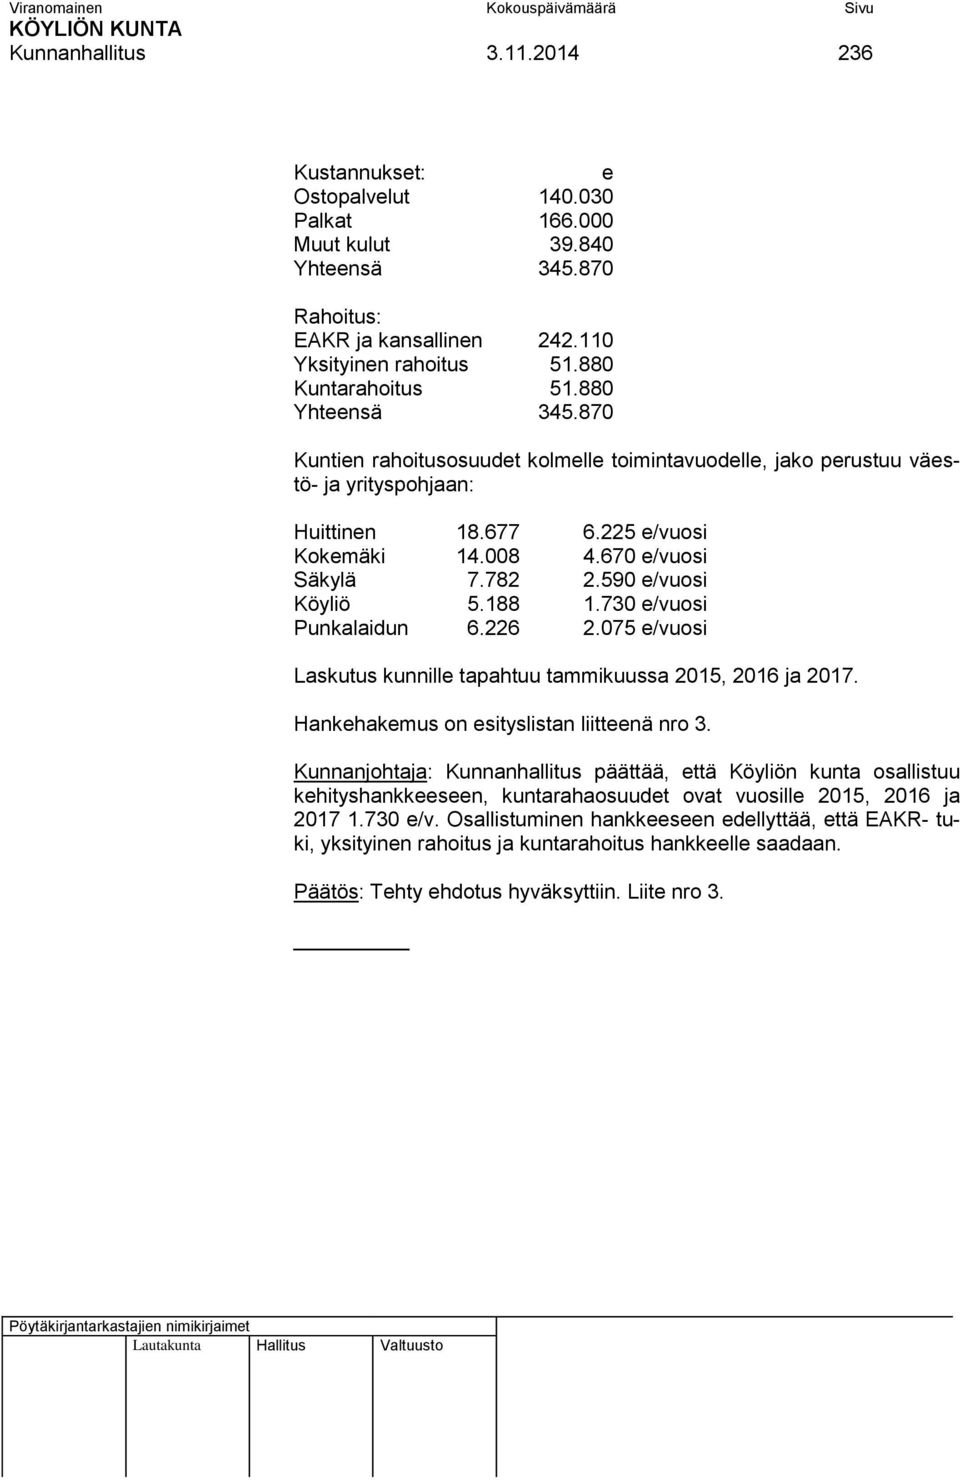 590 e/vuosi Köyliö 5.188 1.730 e/vuosi Punkalaidun 6.226 2.075 e/vuosi Laskutus kunnille tapahtuu tammikuussa 2015, 2016 ja 2017. Hankehakemus on esityslistan liitteenä nro 3.